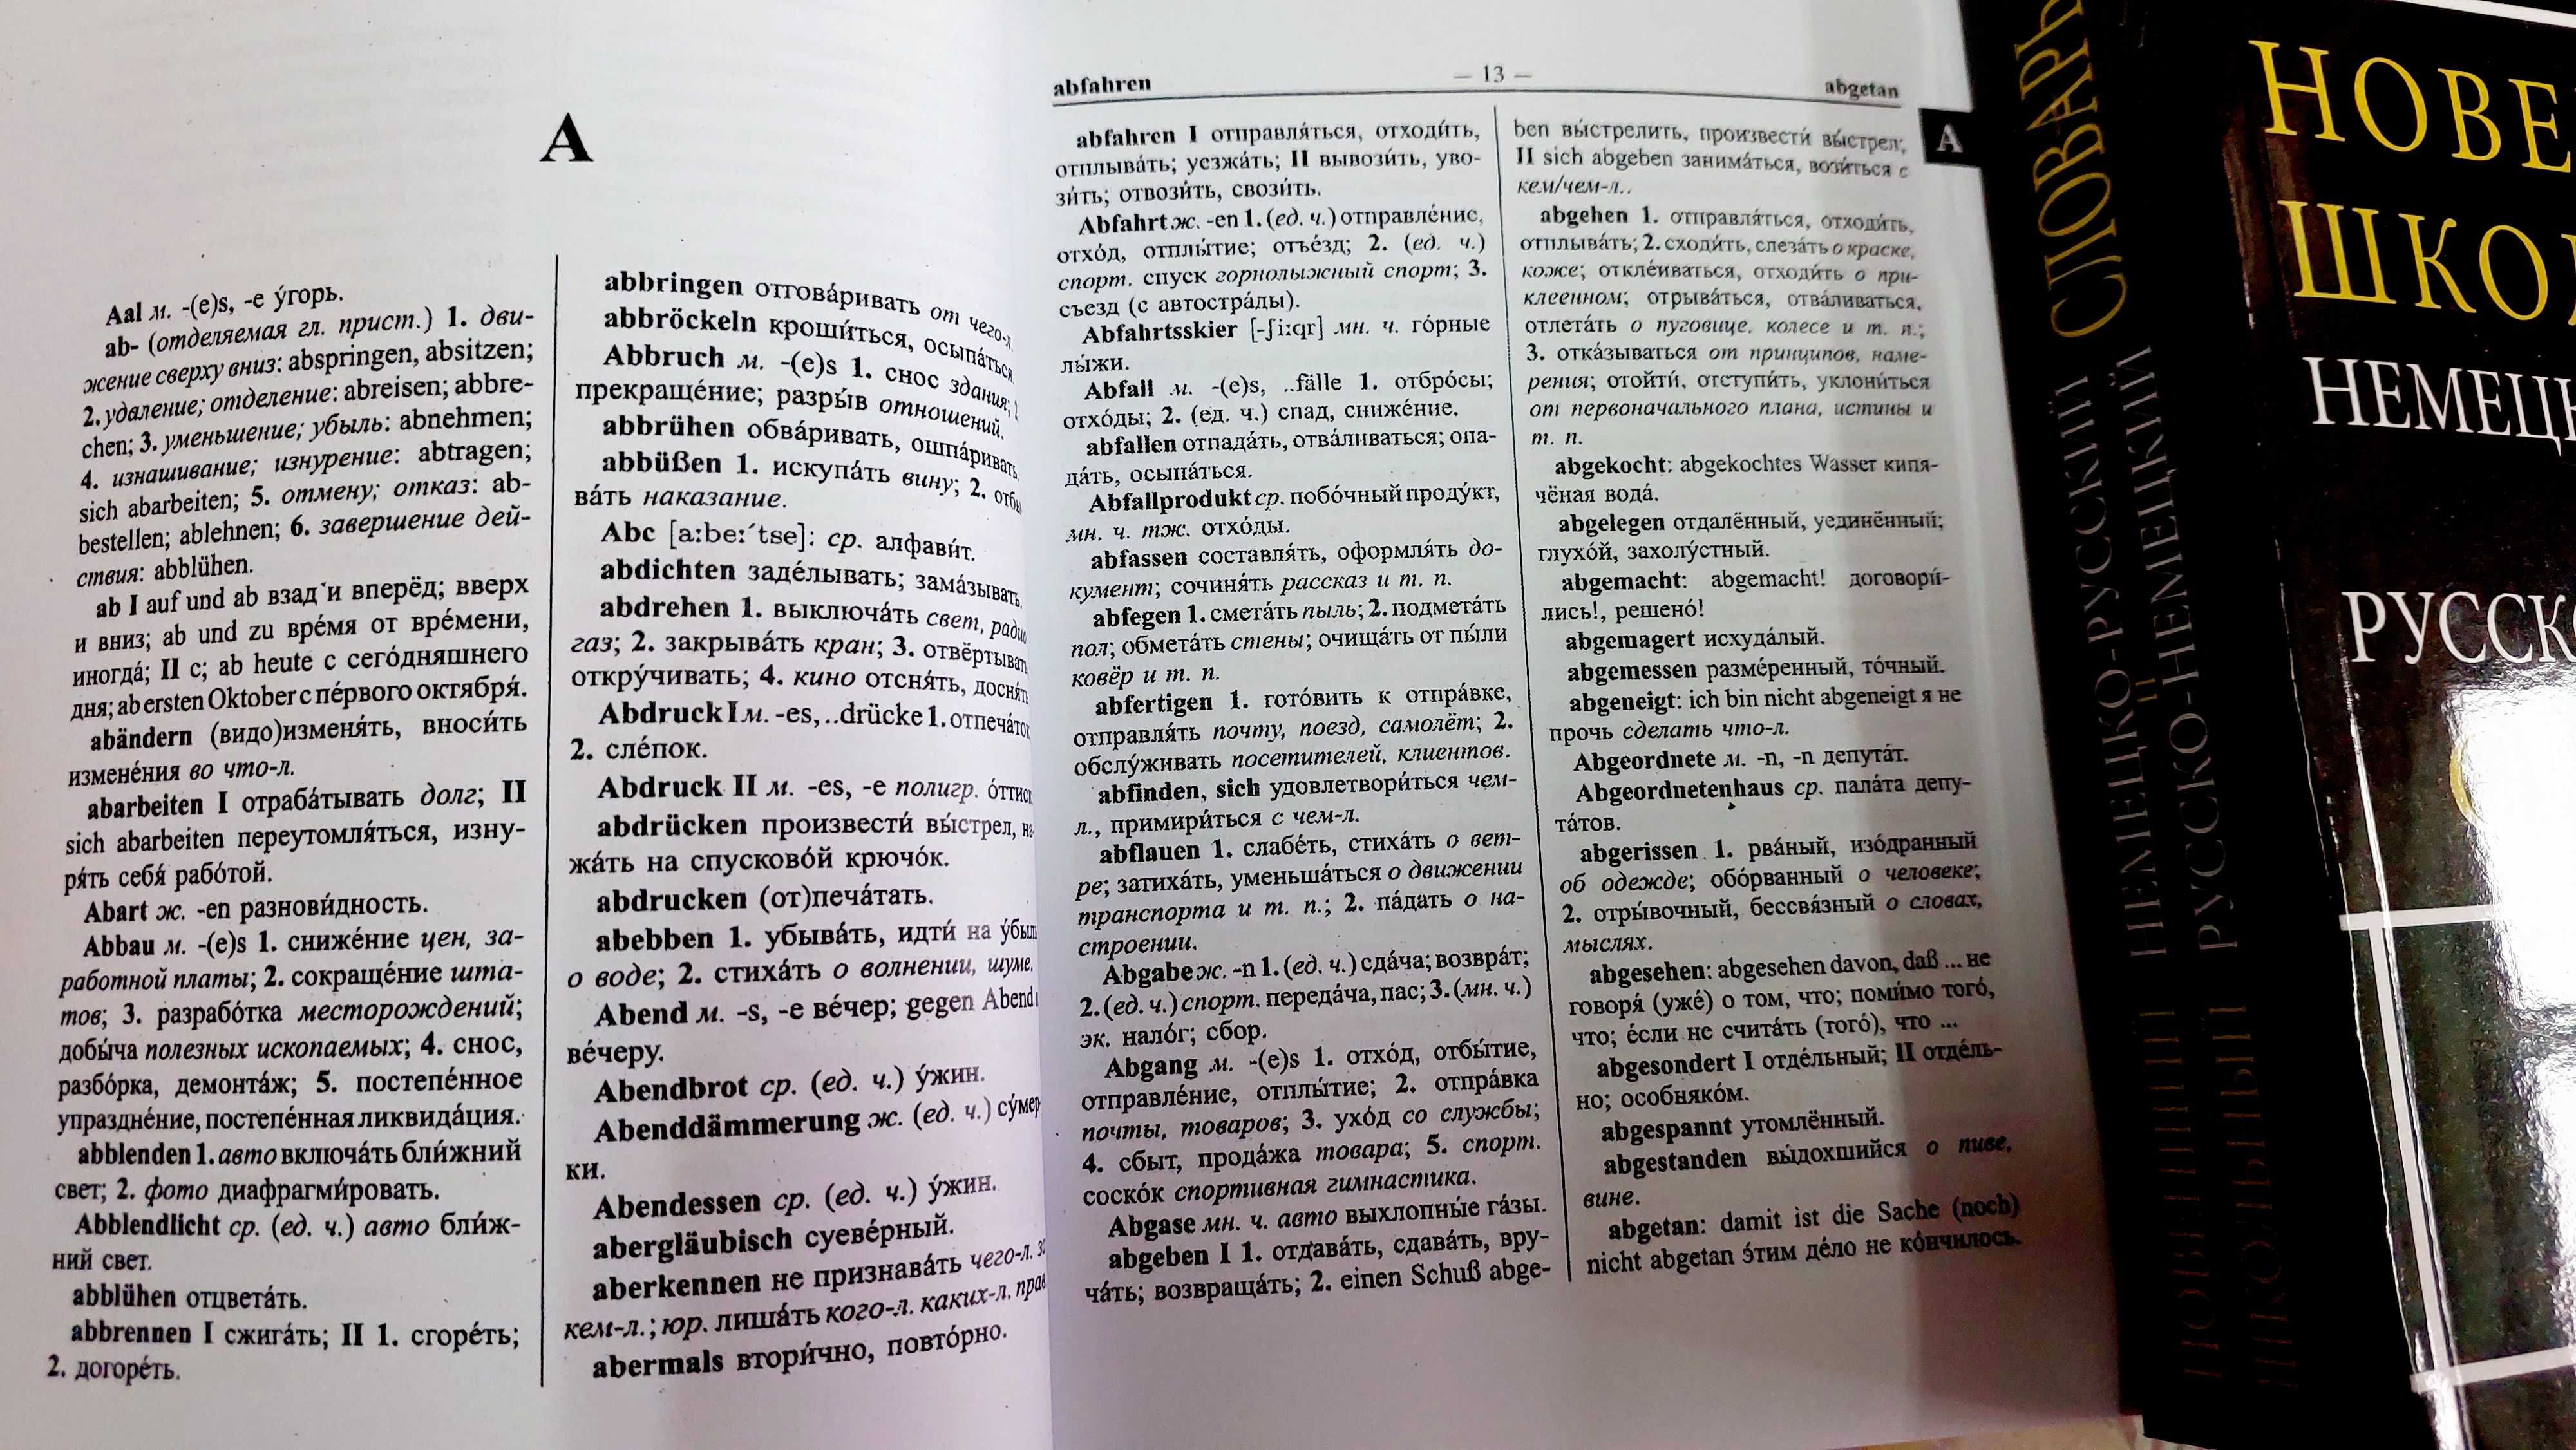 Немецко русский и русско немецкий словарь на 120 тыс с новой лексикой